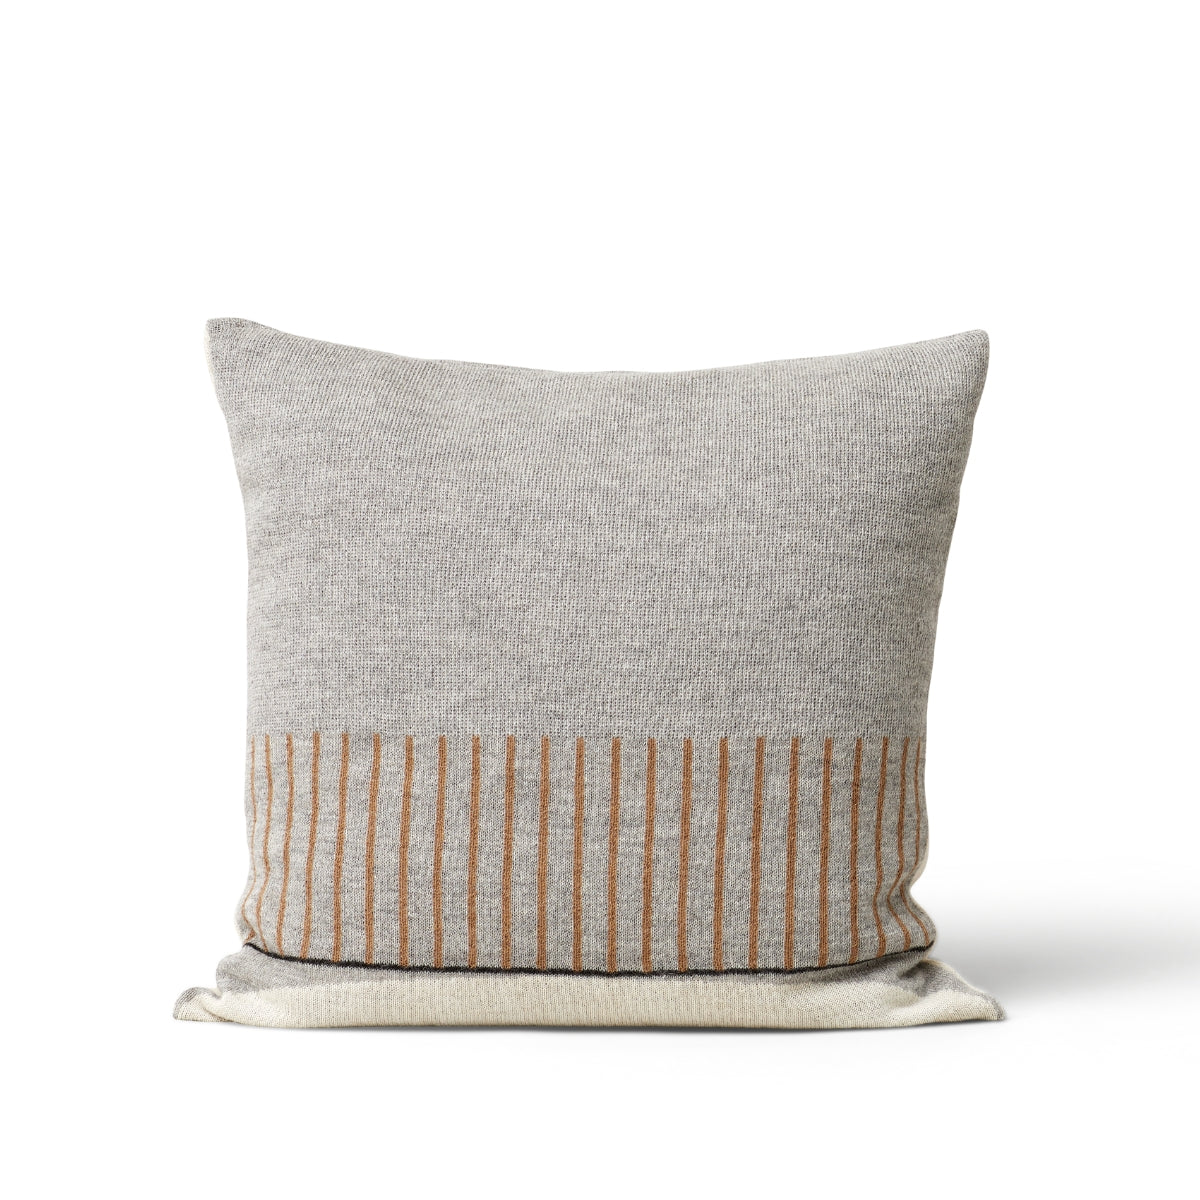 Form & Refine | Aymara Cushion - Pattern Grey